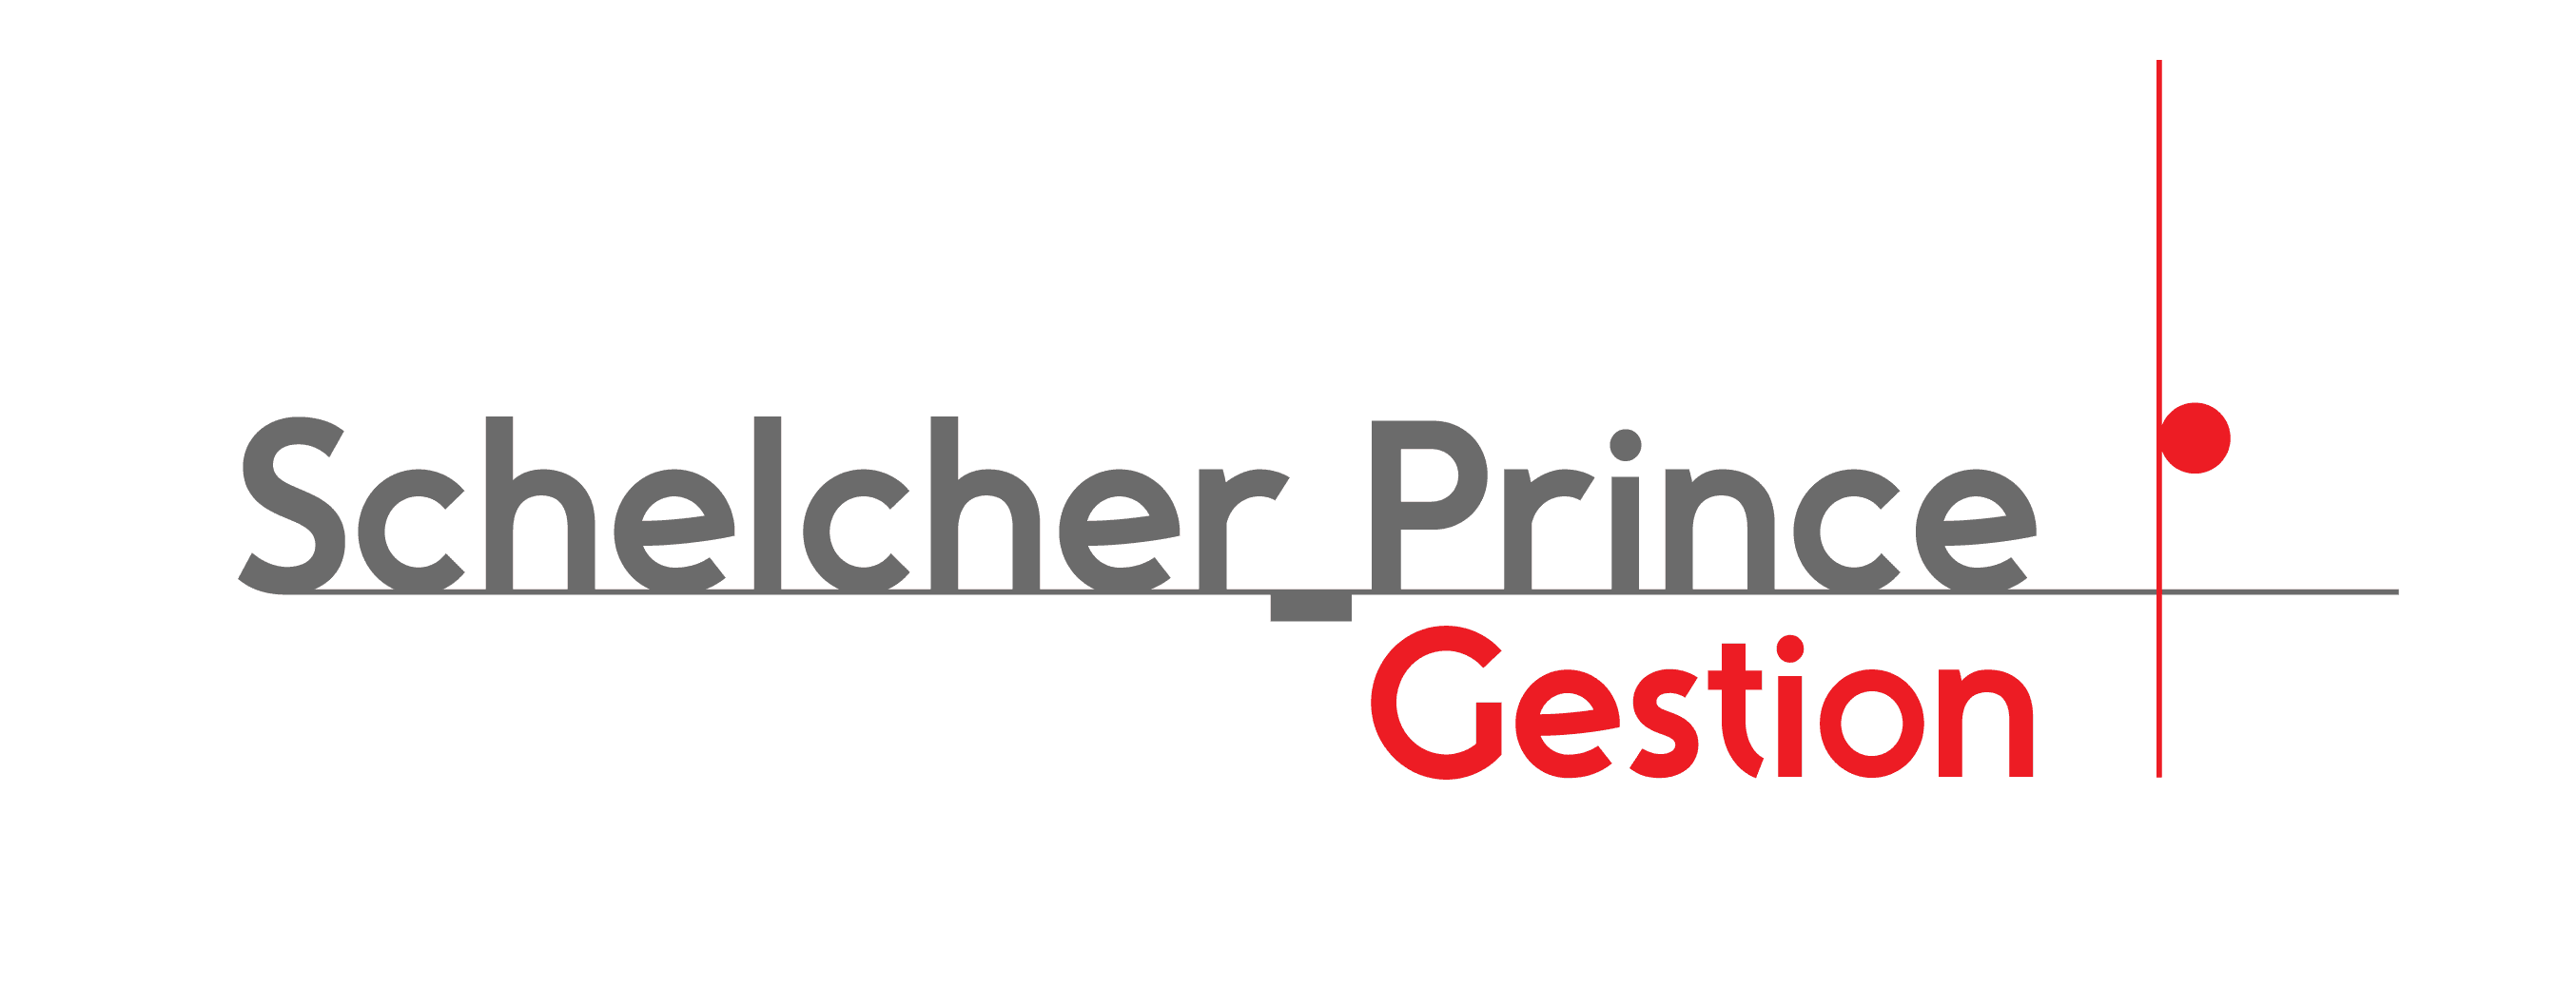 Logo - SCHELCHER PRINCE